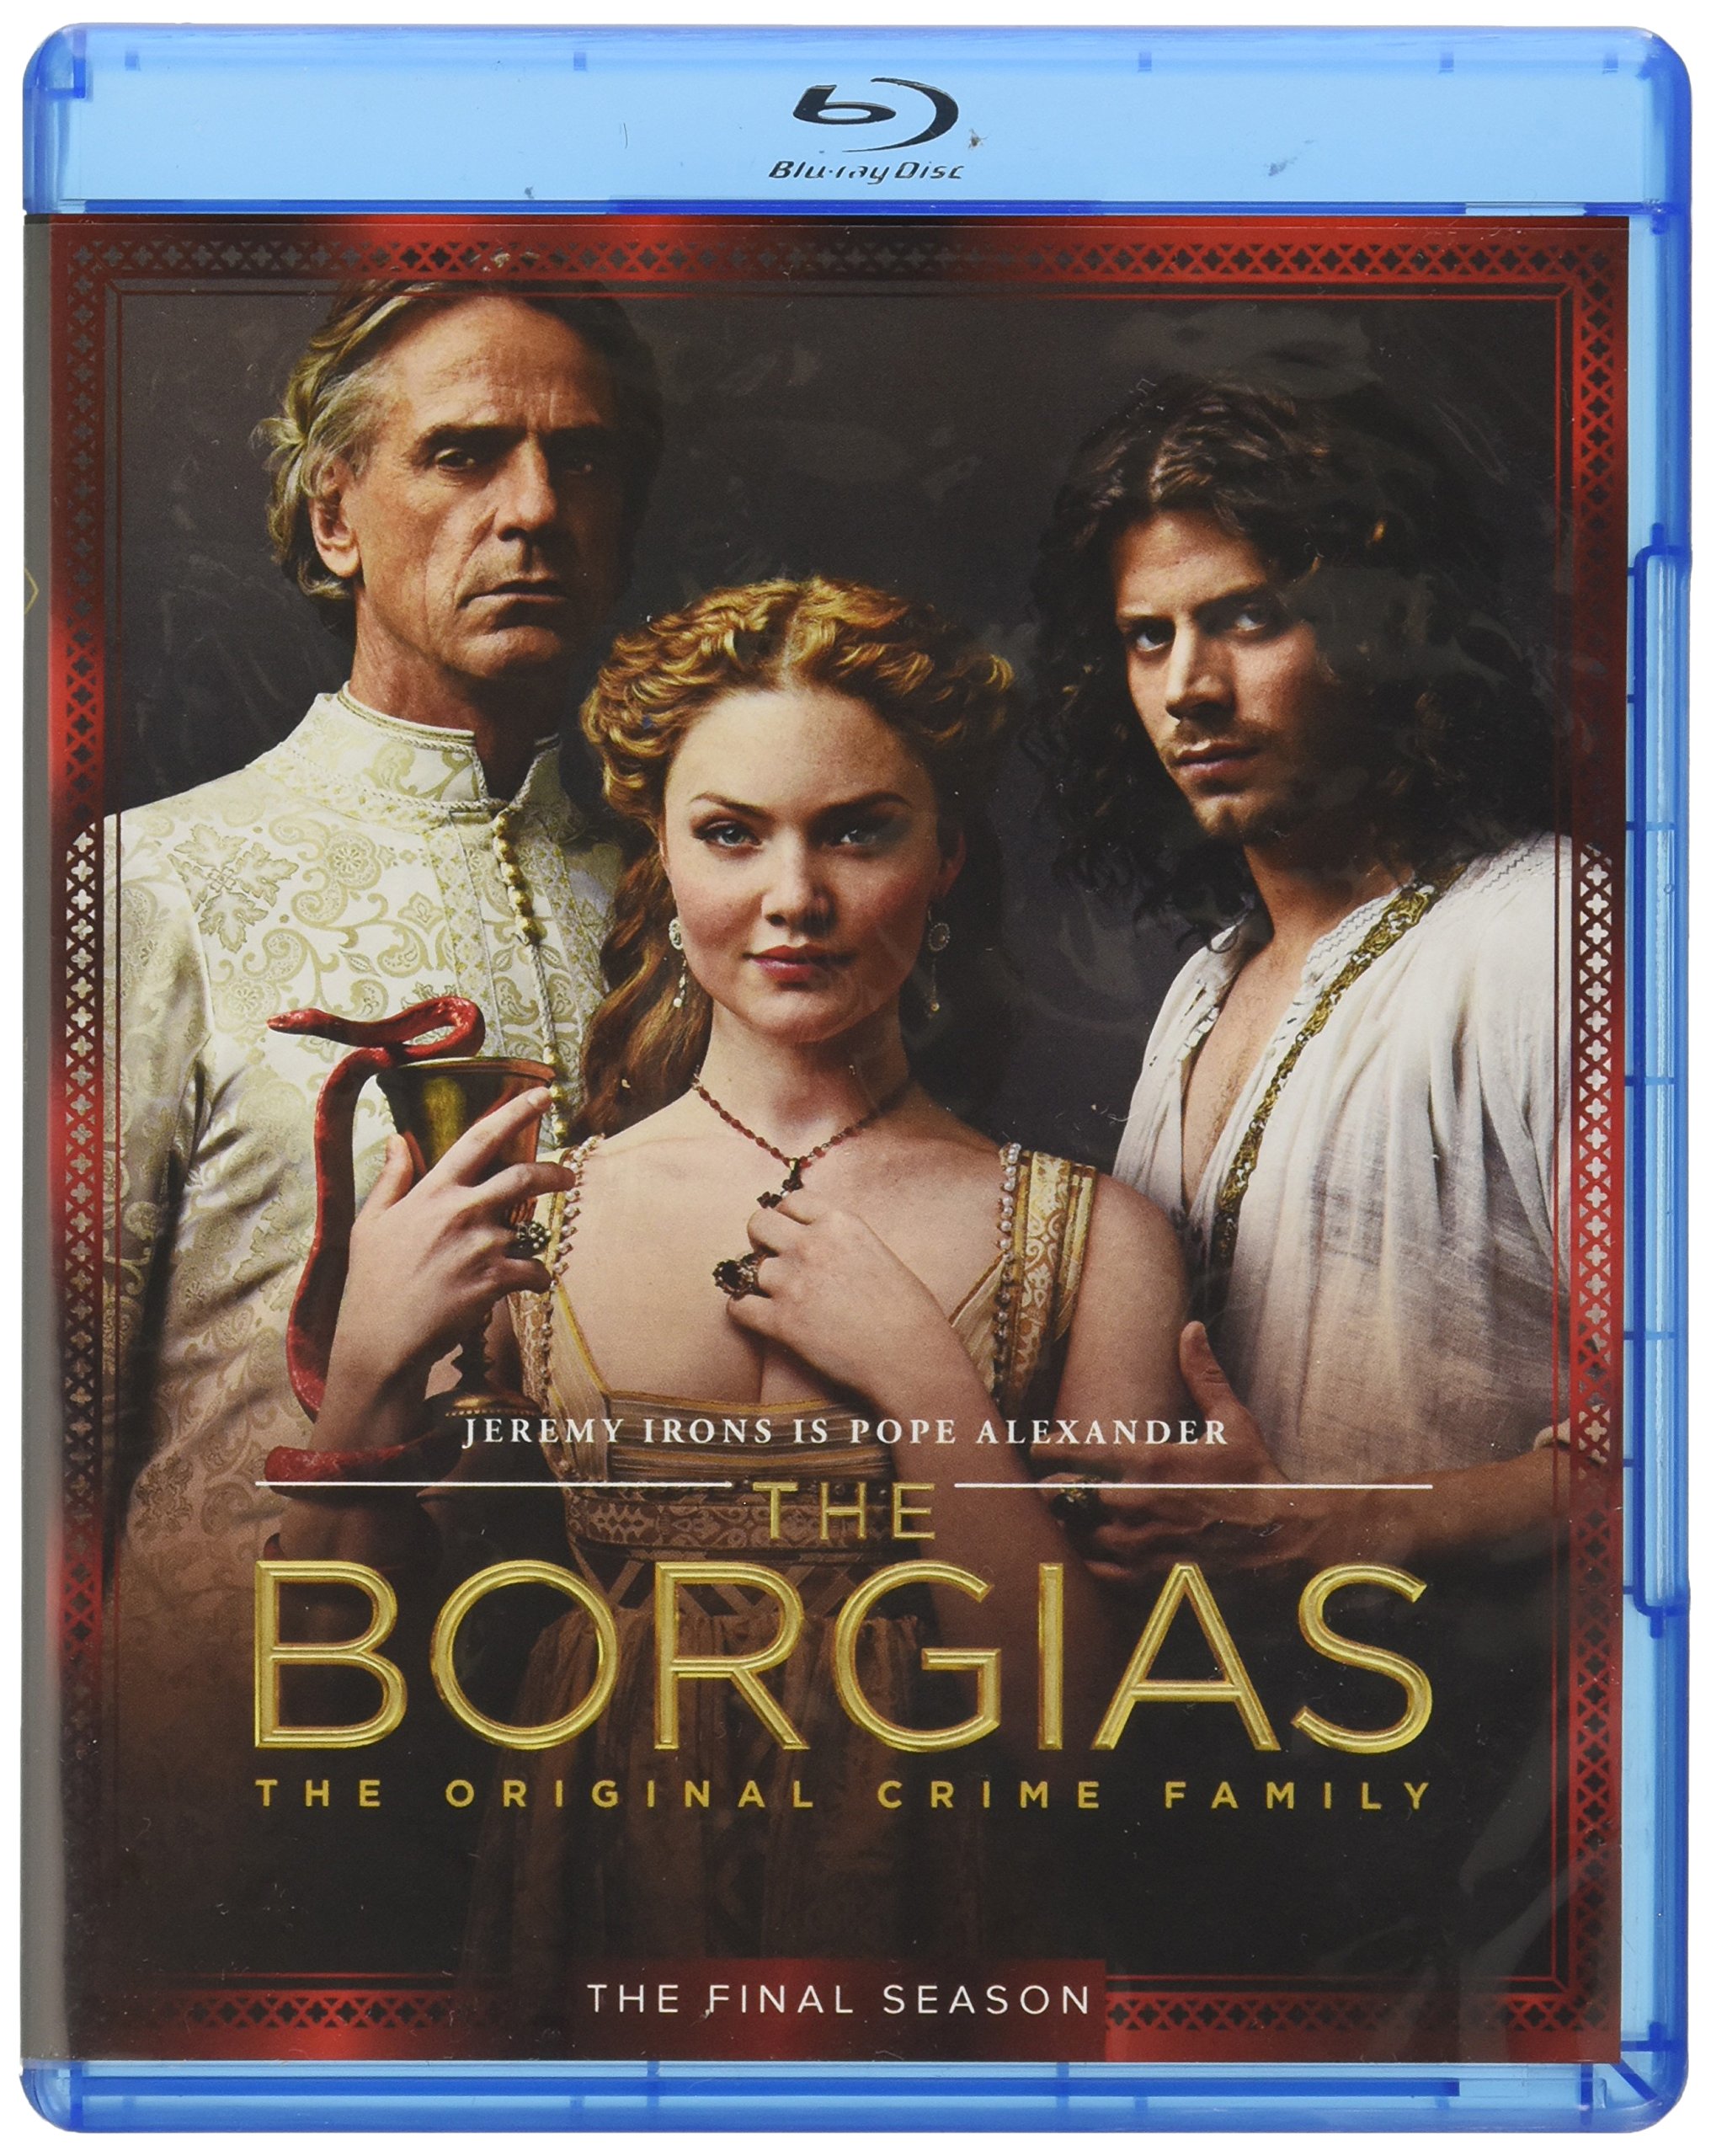 Borgias: Final Season (Blu-ray) on MovieShack